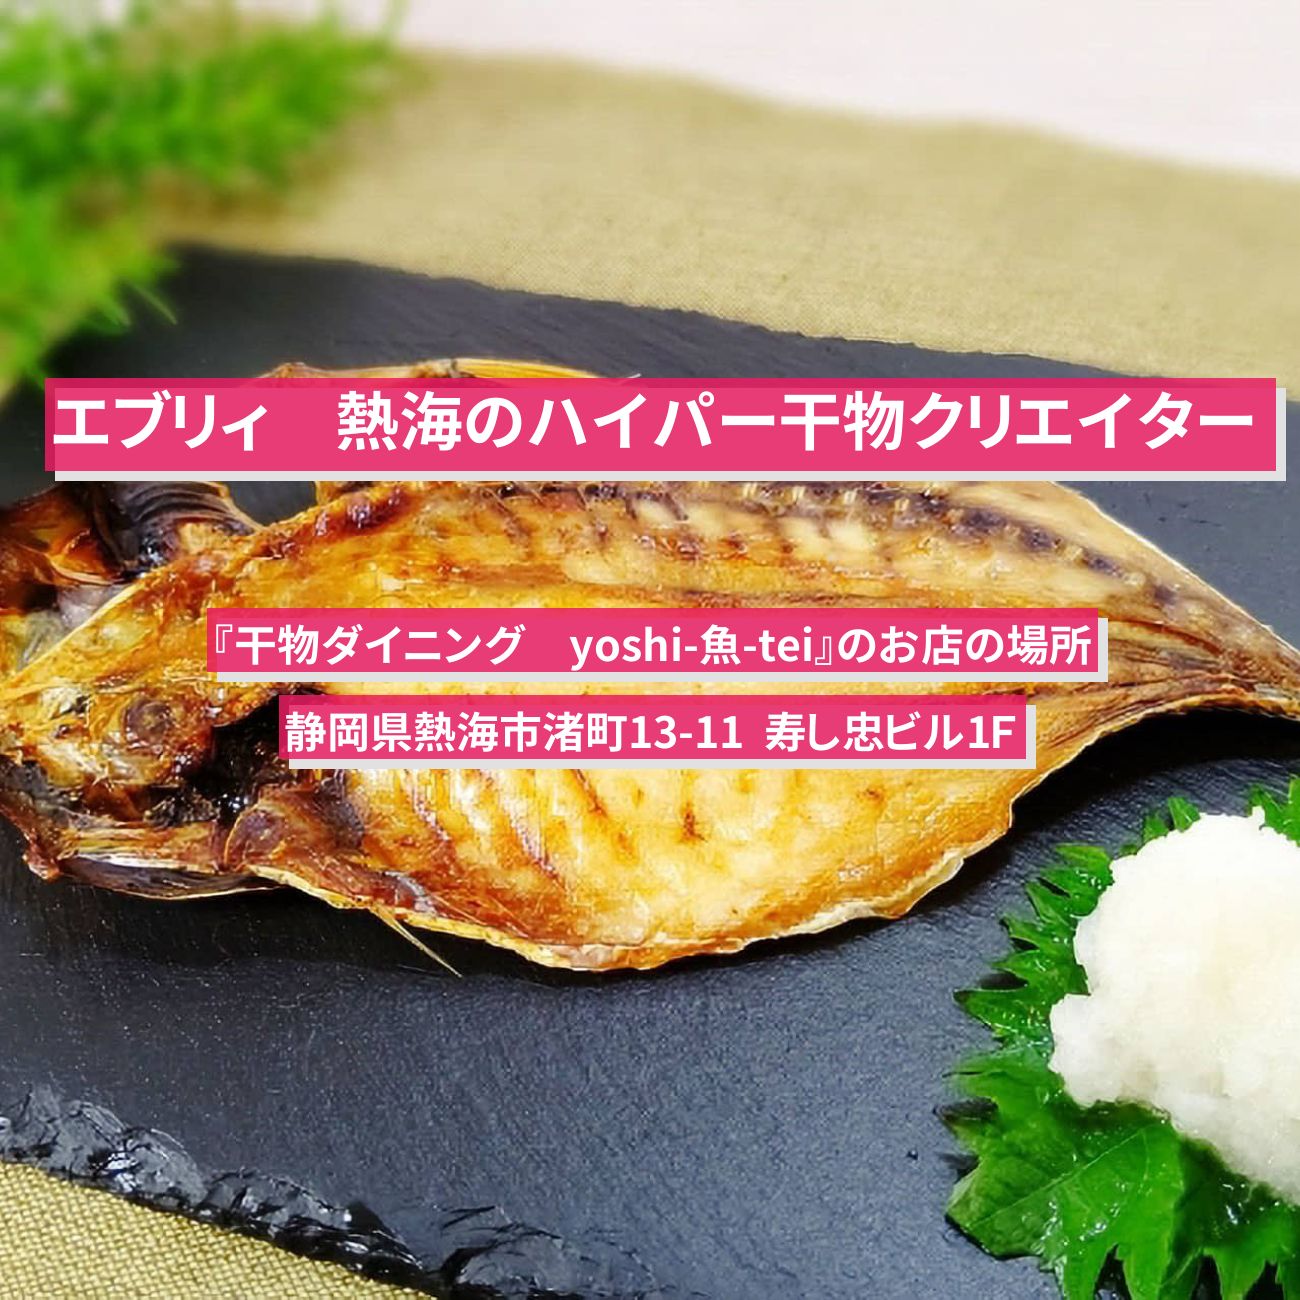 【エブリィ】熱海のハイパー干物クリエイター・海鮮丼『干物ダイニング　yoshi-魚-tei』のお店の場所〔every〕